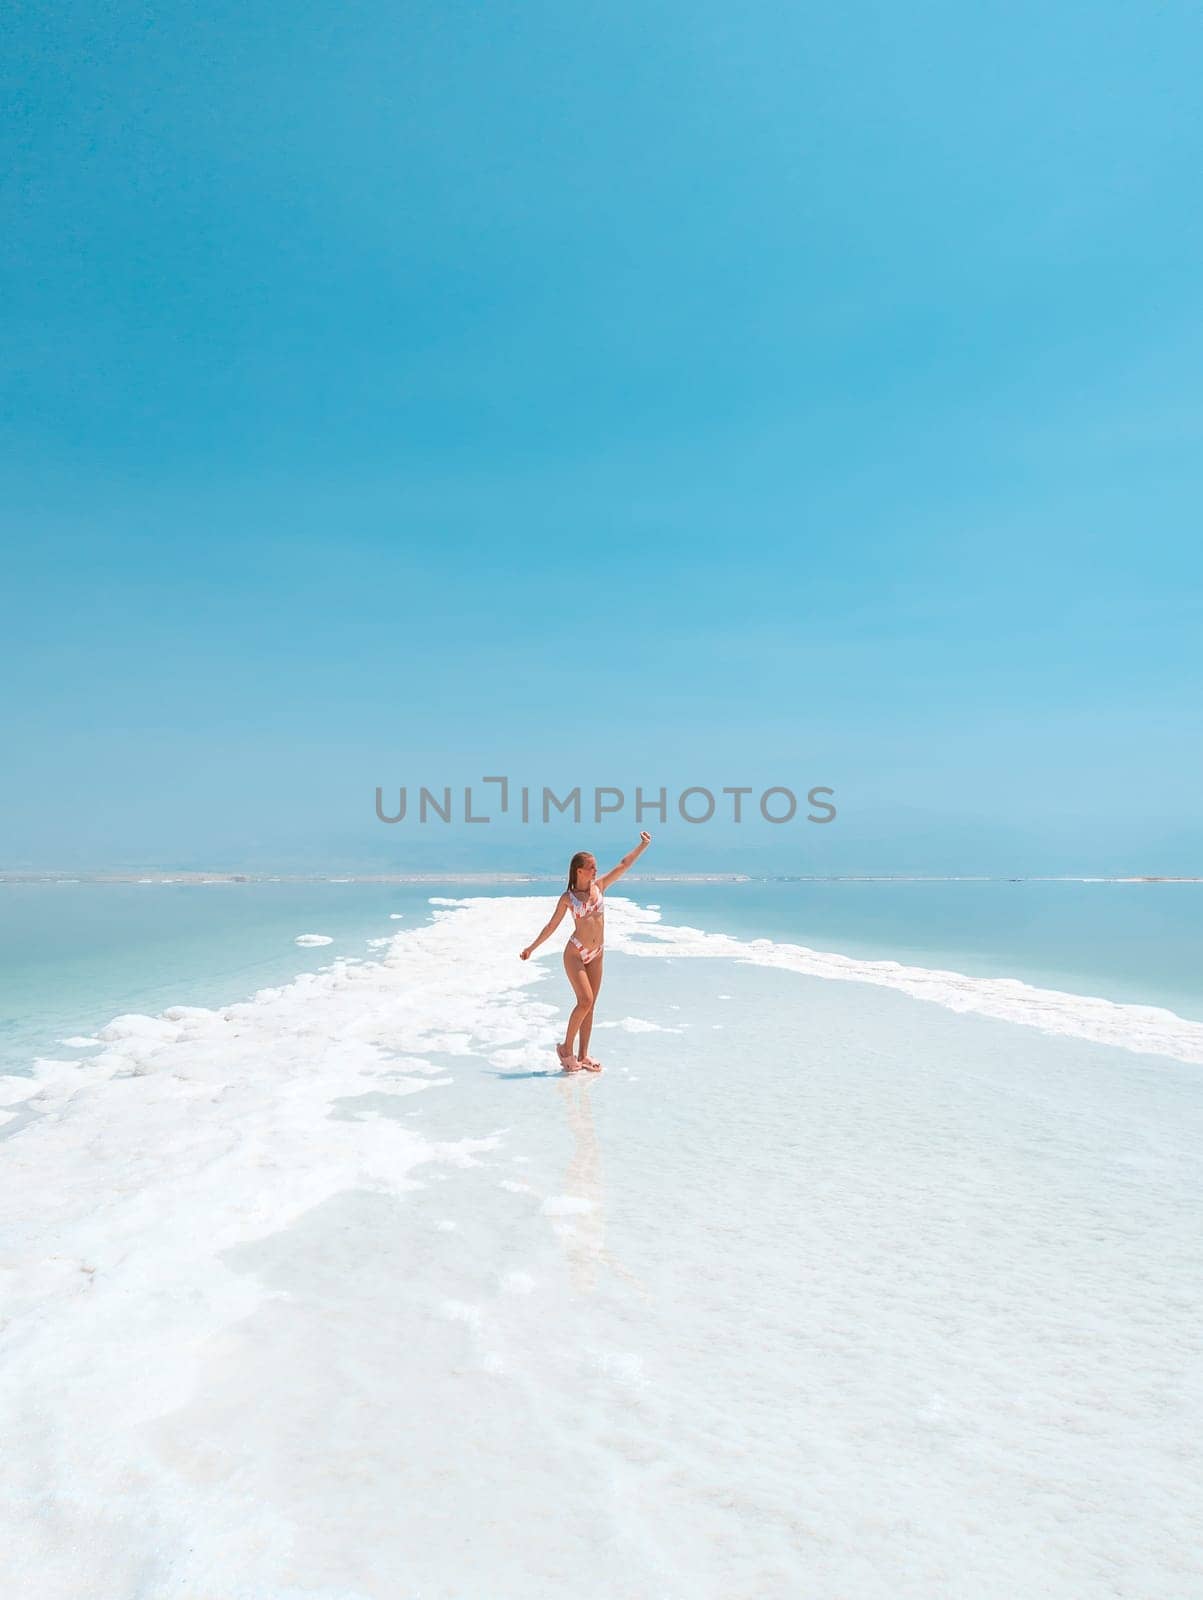 Beautigul girl in swimming suit on Dead sea salt crystals formation coastline, clear cyan green water at Ein Bokek beach, Israel by Len44ik